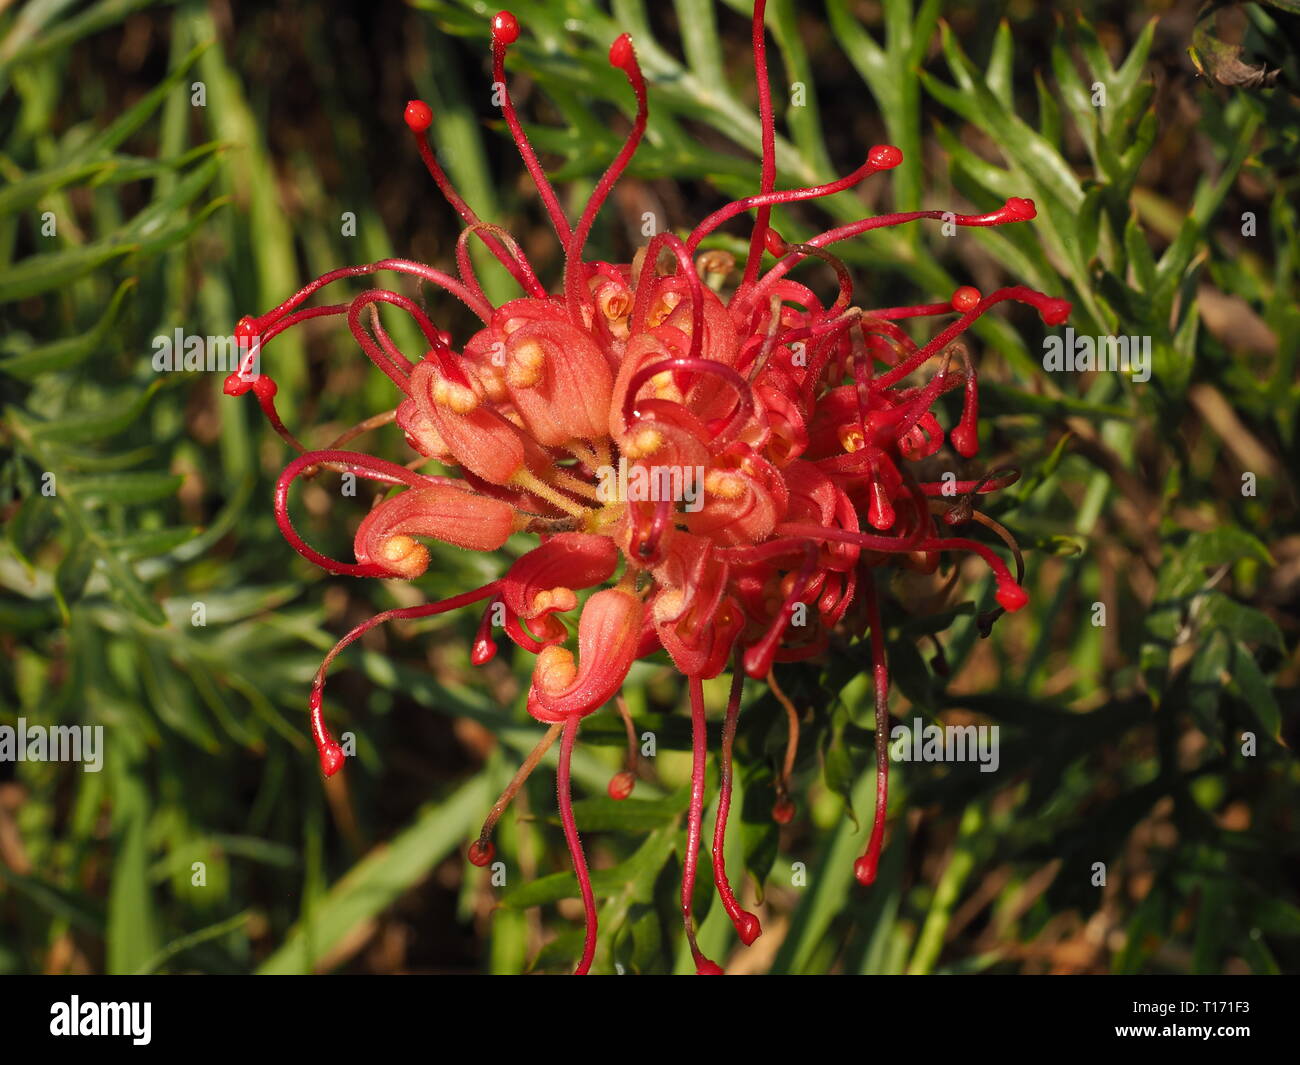 Grevillea fiori. Petali di colore rosso dei nativi australiani Grevillea piante in fiore. Gli uccelli selvatici sono attratti da questi fiori. Foto Stock